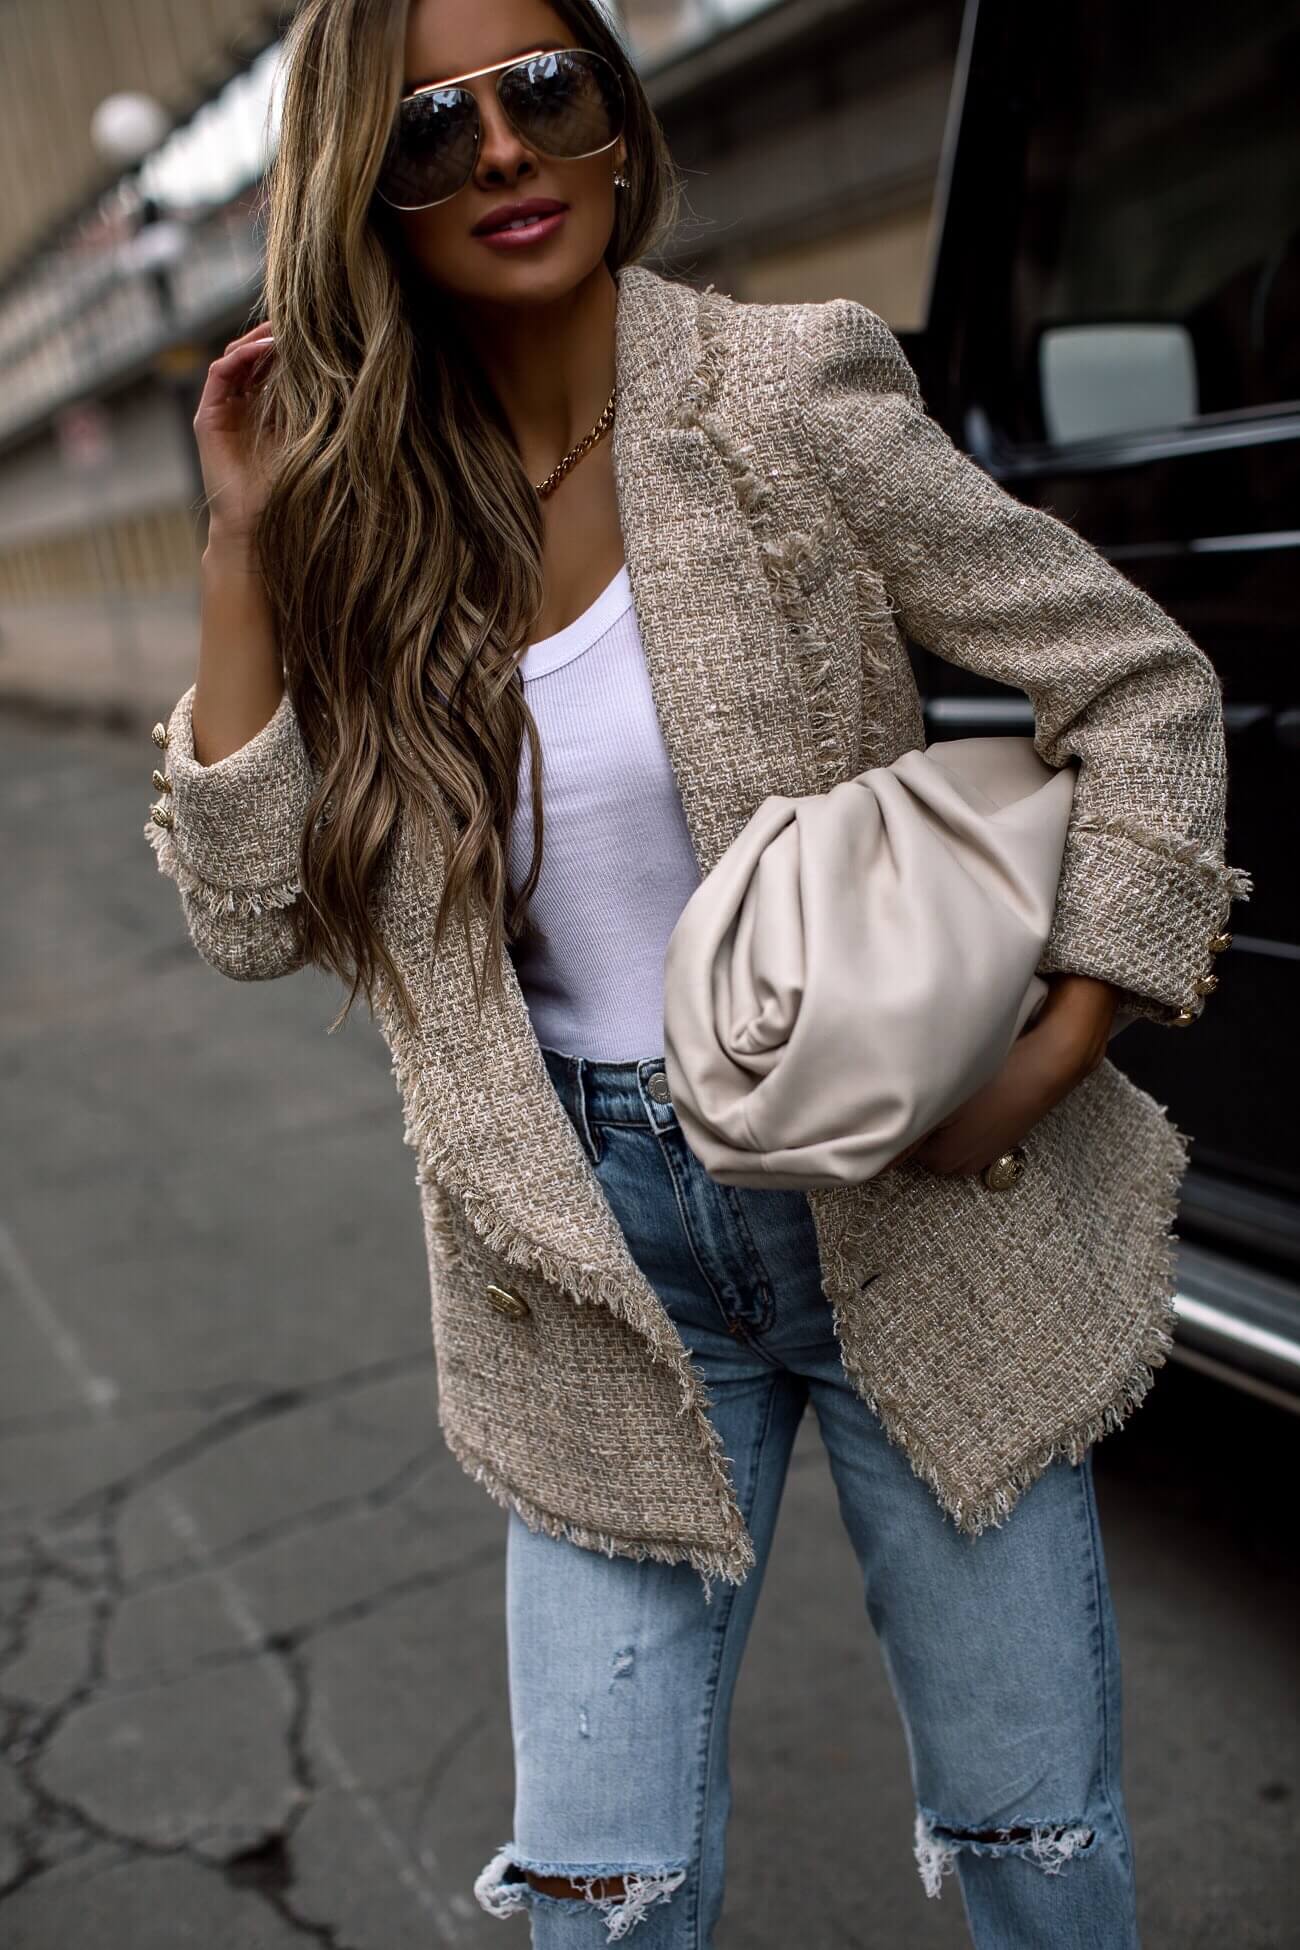 fashion blogger mia mia mine wearing a bottega veneta pouch and a balmain blazer